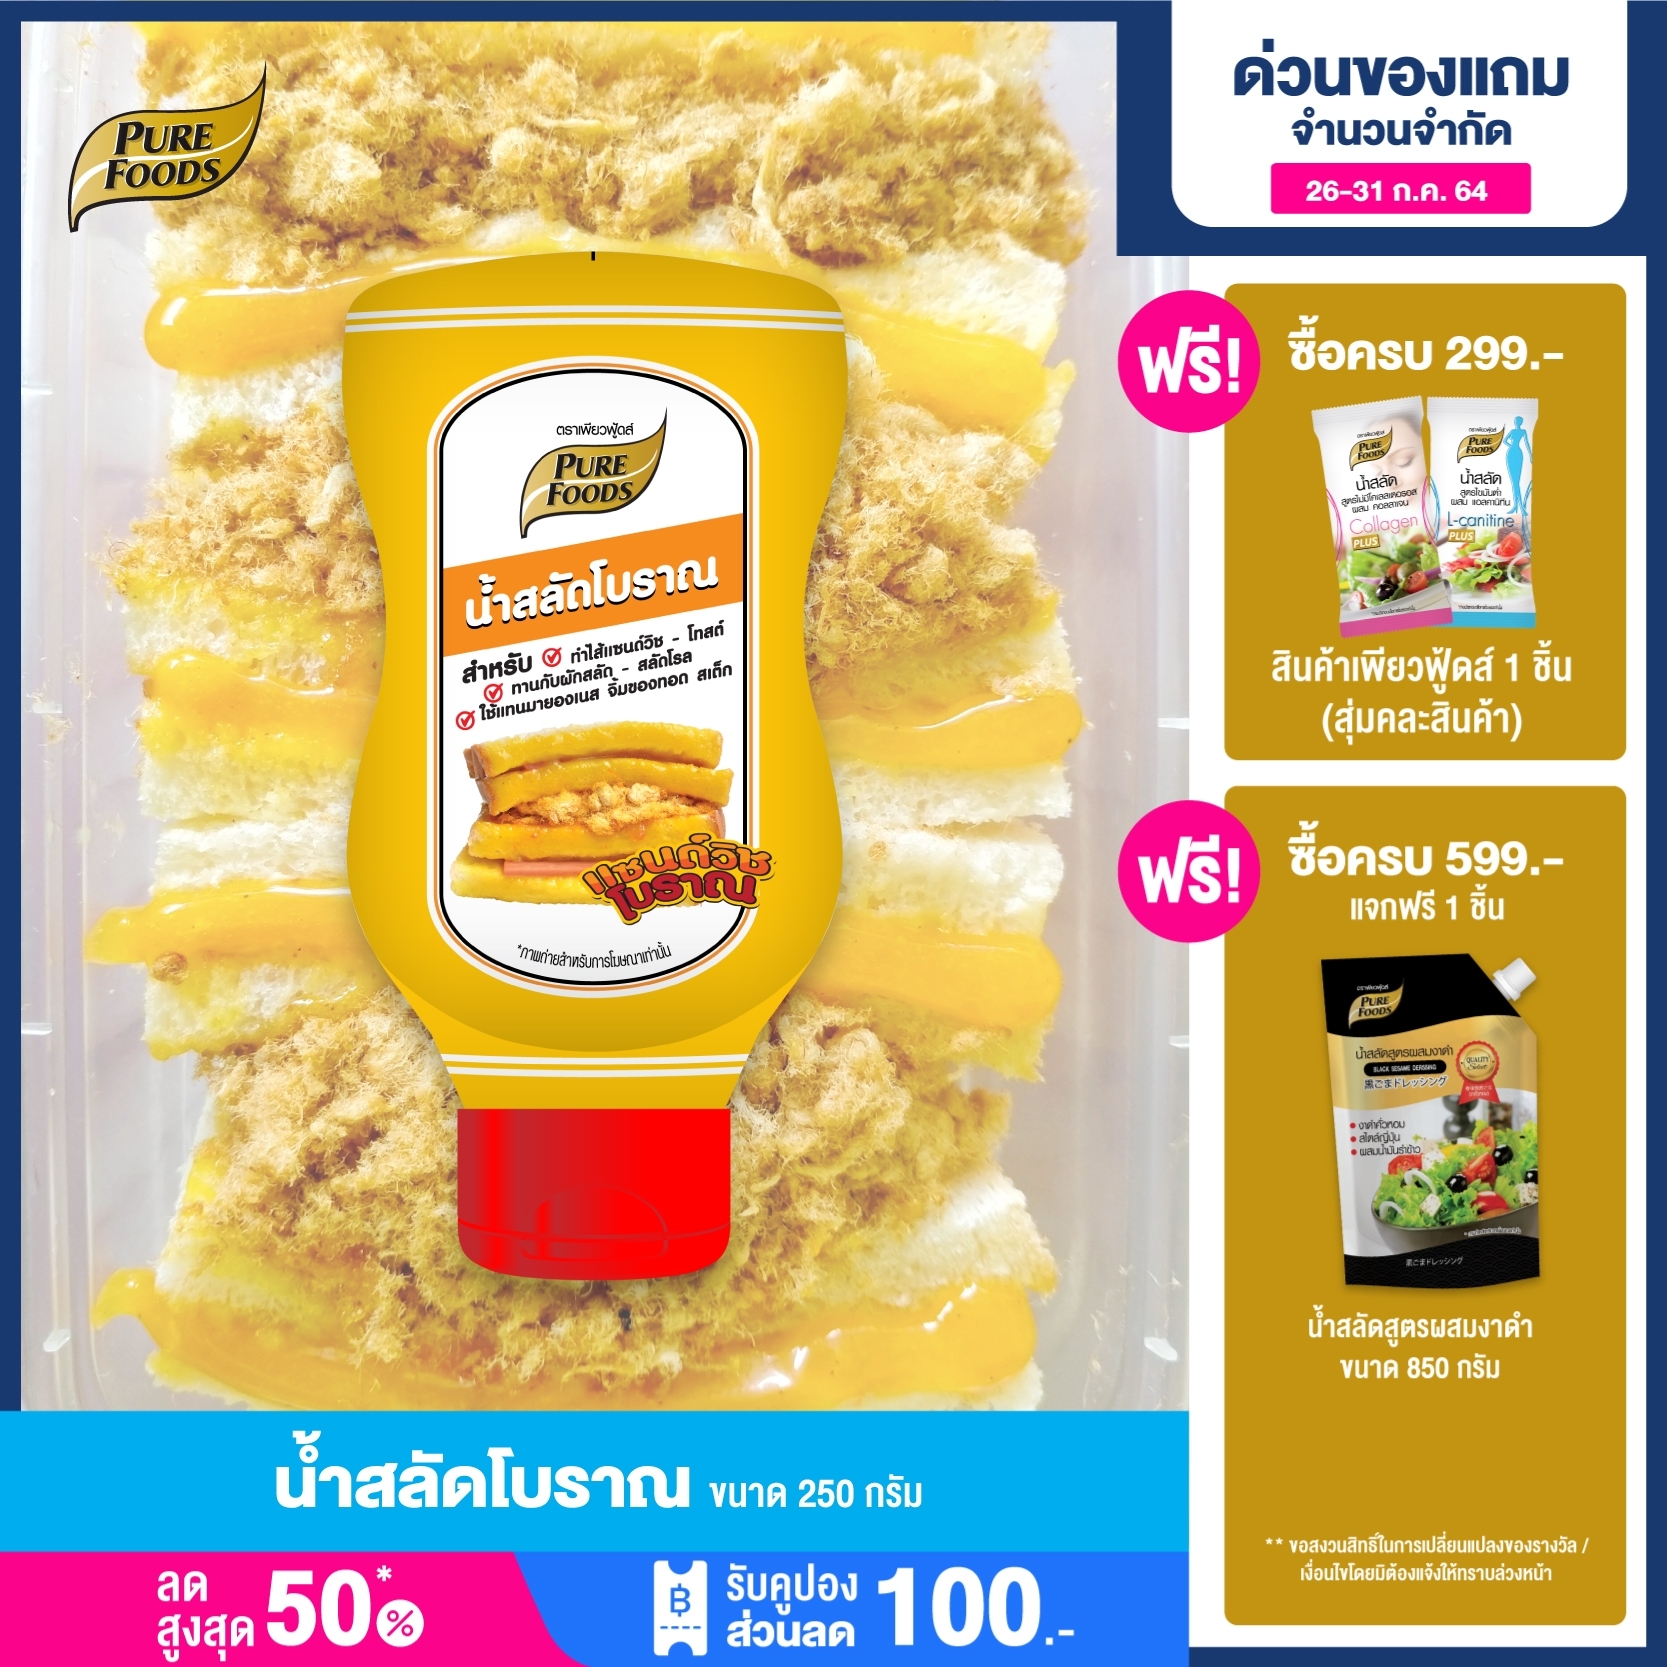 น้ำสลัด  น้ำสลัดโบราณ แซนวิซโบราณ (Thai sandwich) แซนวิช สลัดผัก ราคาถูก สลัดโบราณ สำเร็จรูป ตราเพียวฟู้ดส์ Purefoods   ขนาด 250 พร้อมส่ง